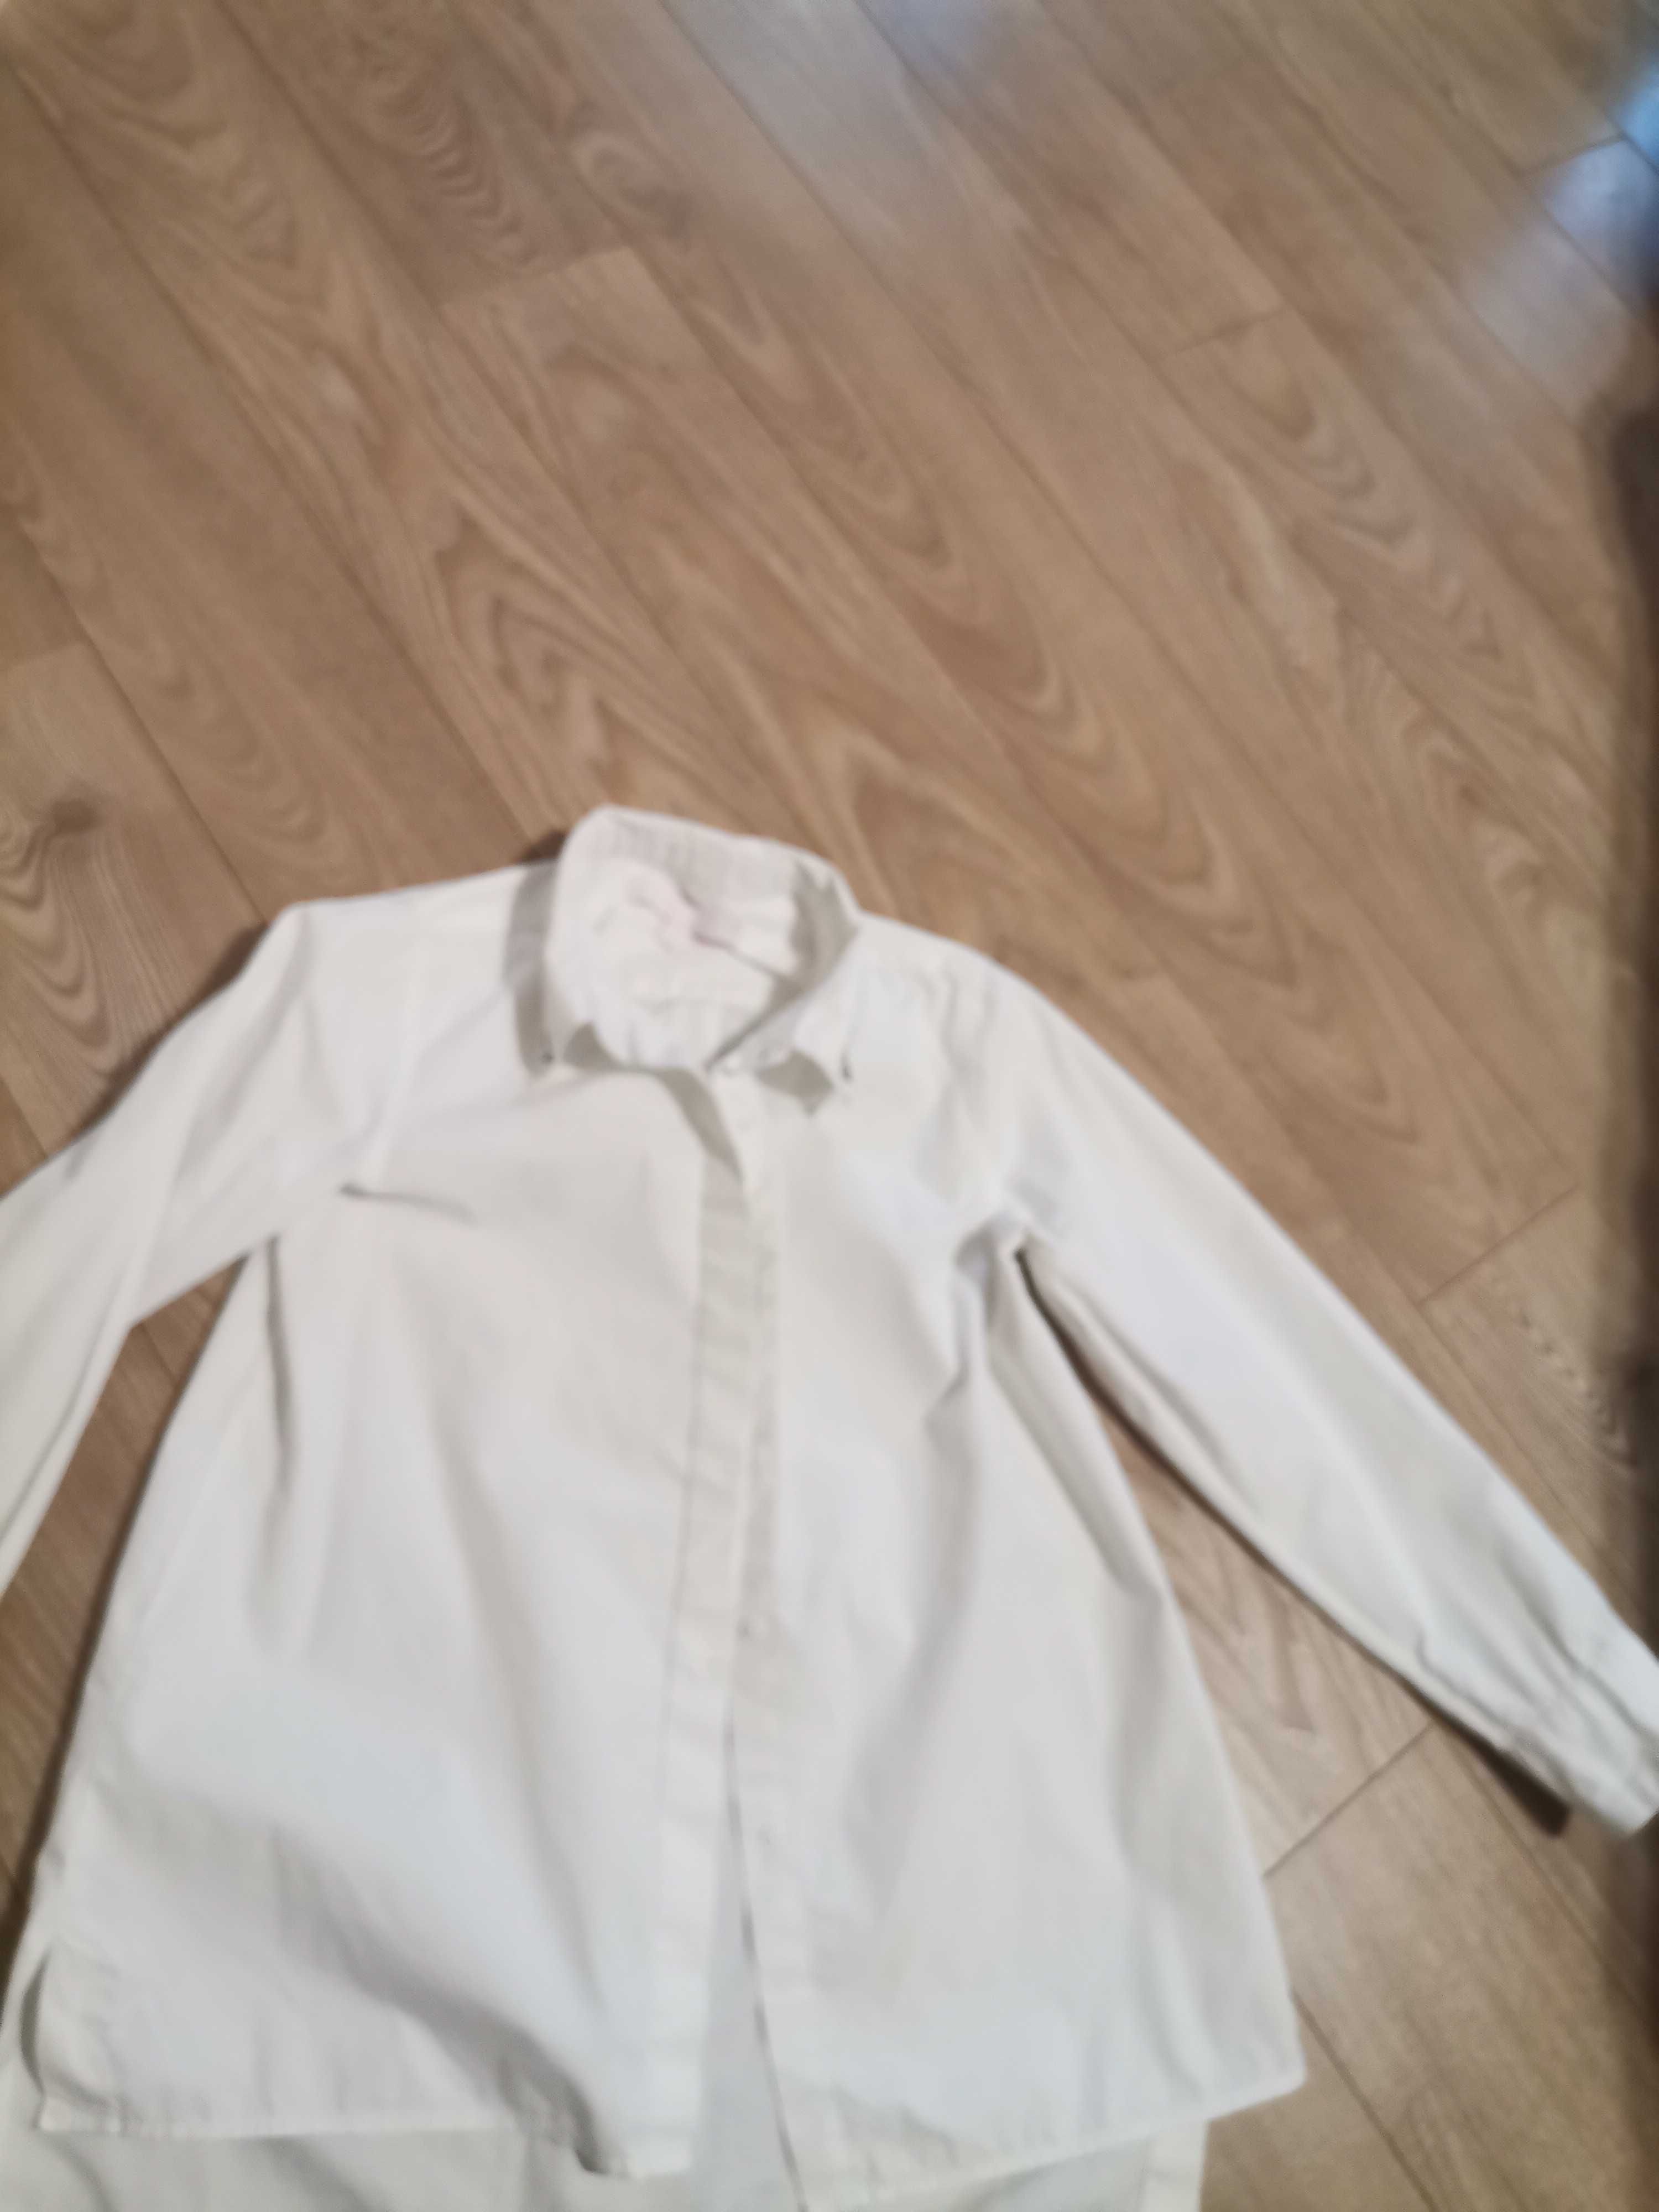 Брюки кюлоты школьные для девочки рост 146 (2пары) и белая рубашка